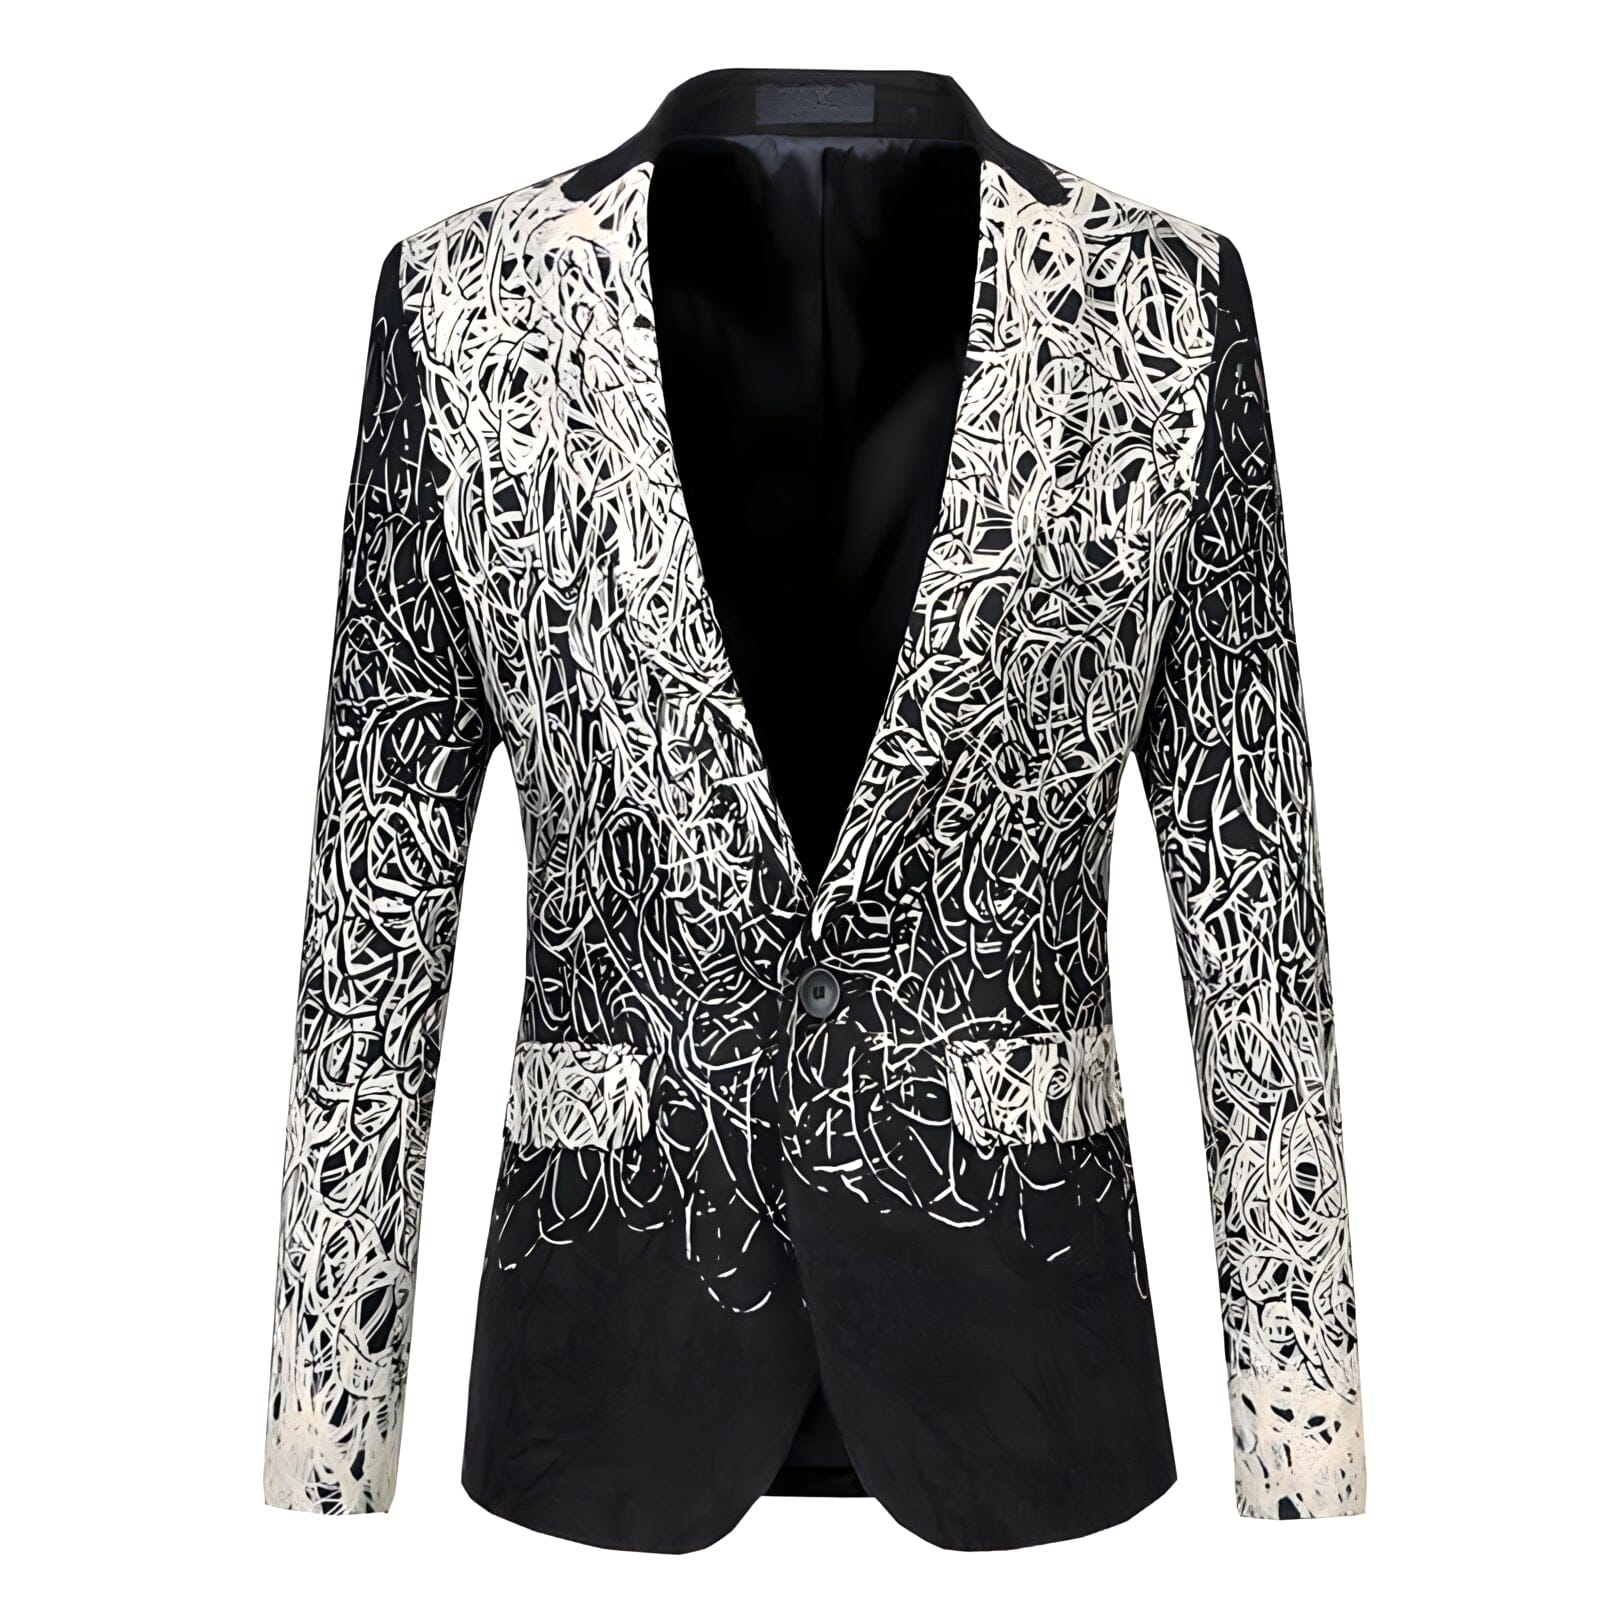 The Fabian Slim Fit Blazer Suit Jacket Shop5798684 Store 2XL 